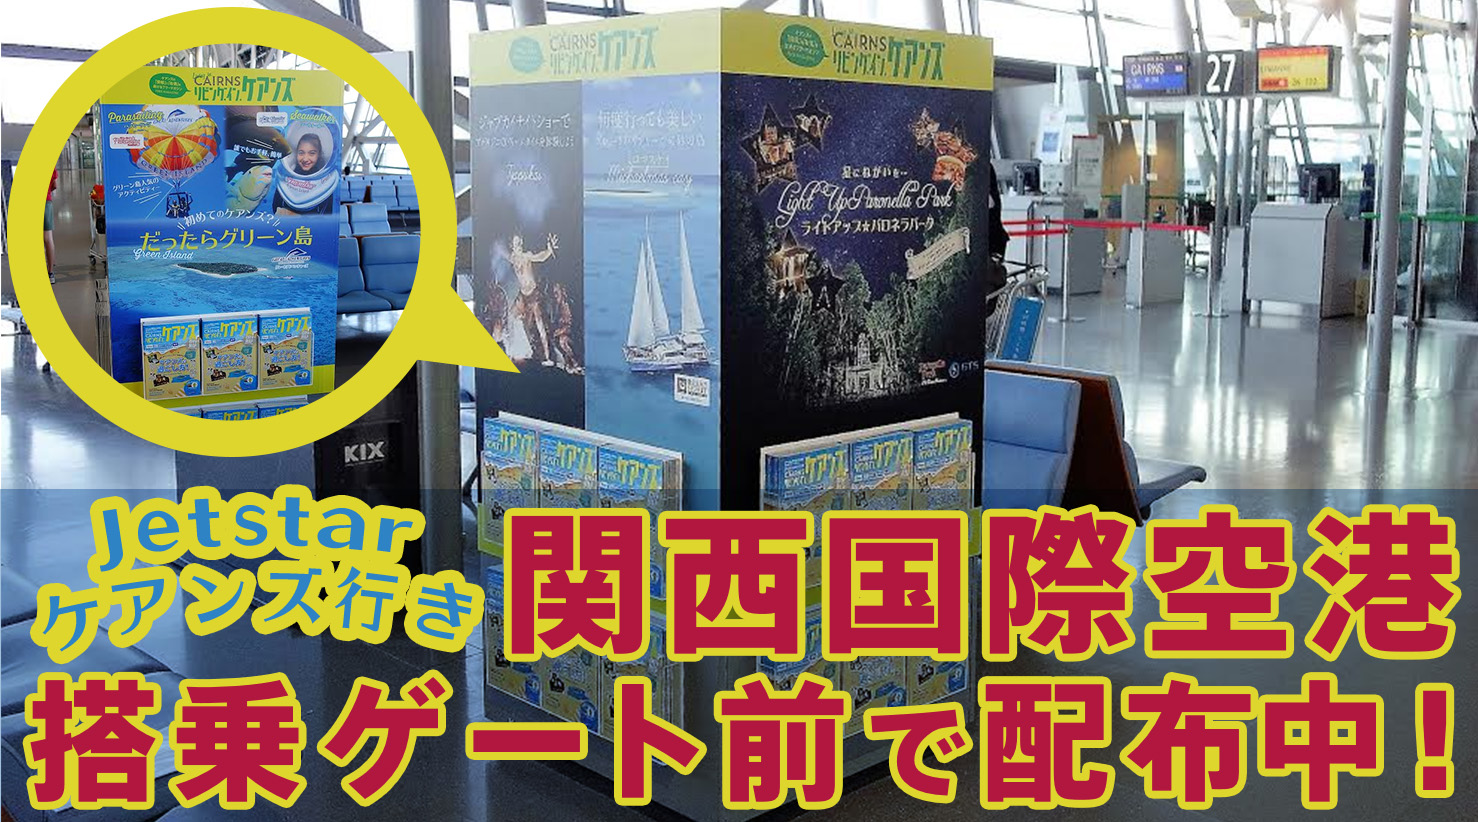 リビング・イン・ケアンズは関西国際空港のジェットスターケアンズ行きゲート前で配布中！